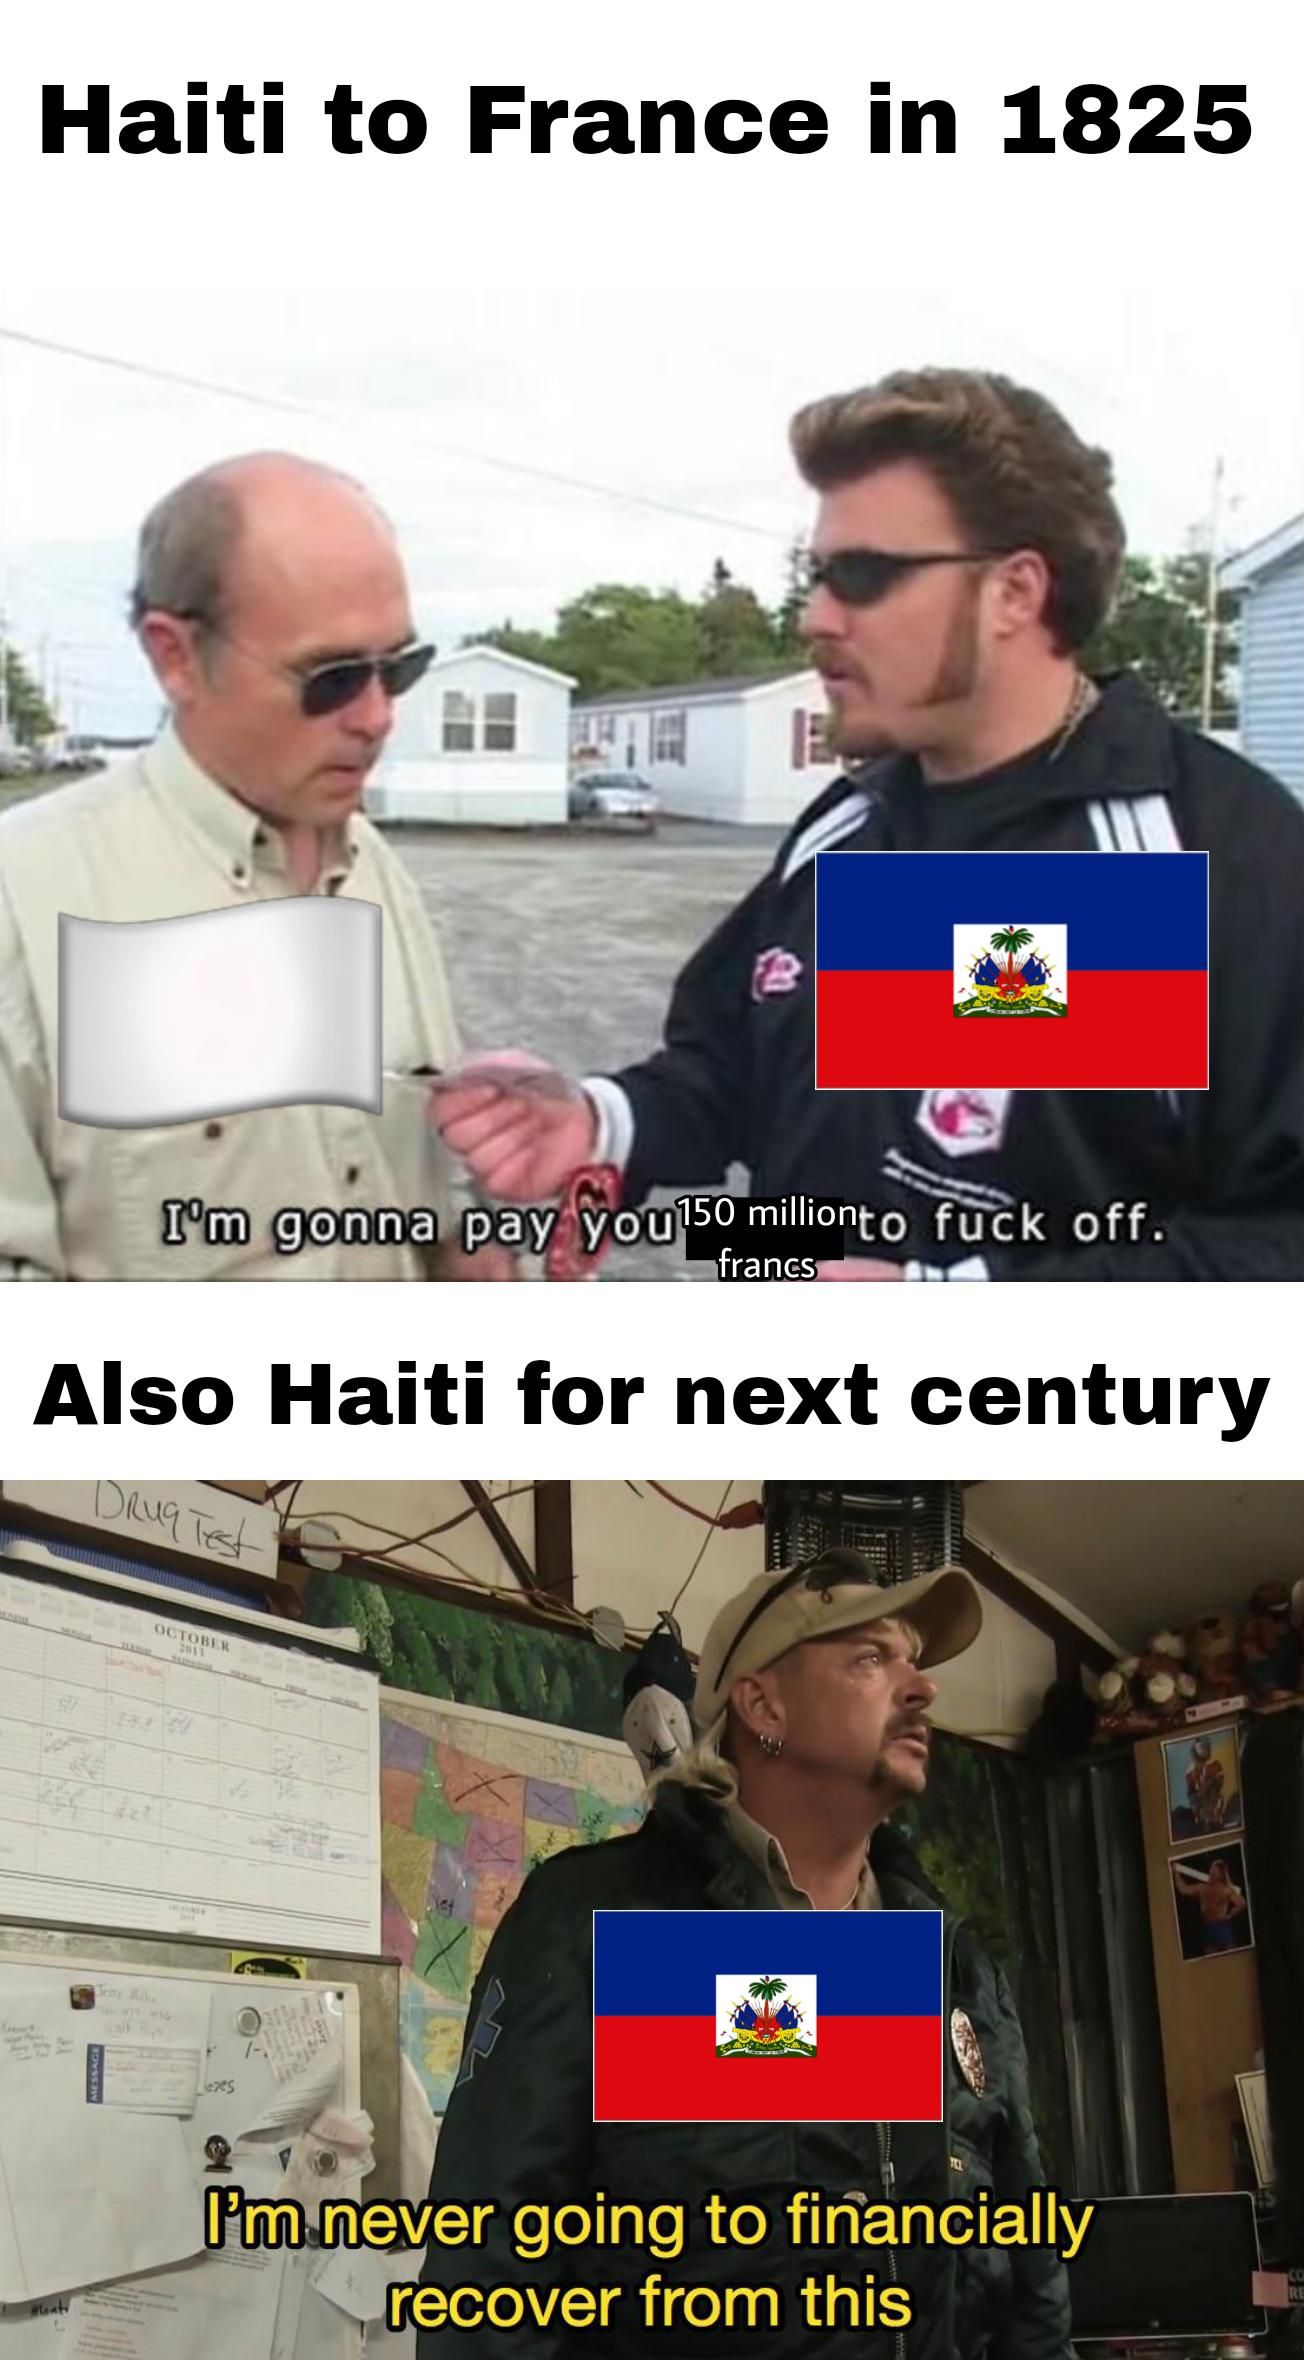 Poor Haiti